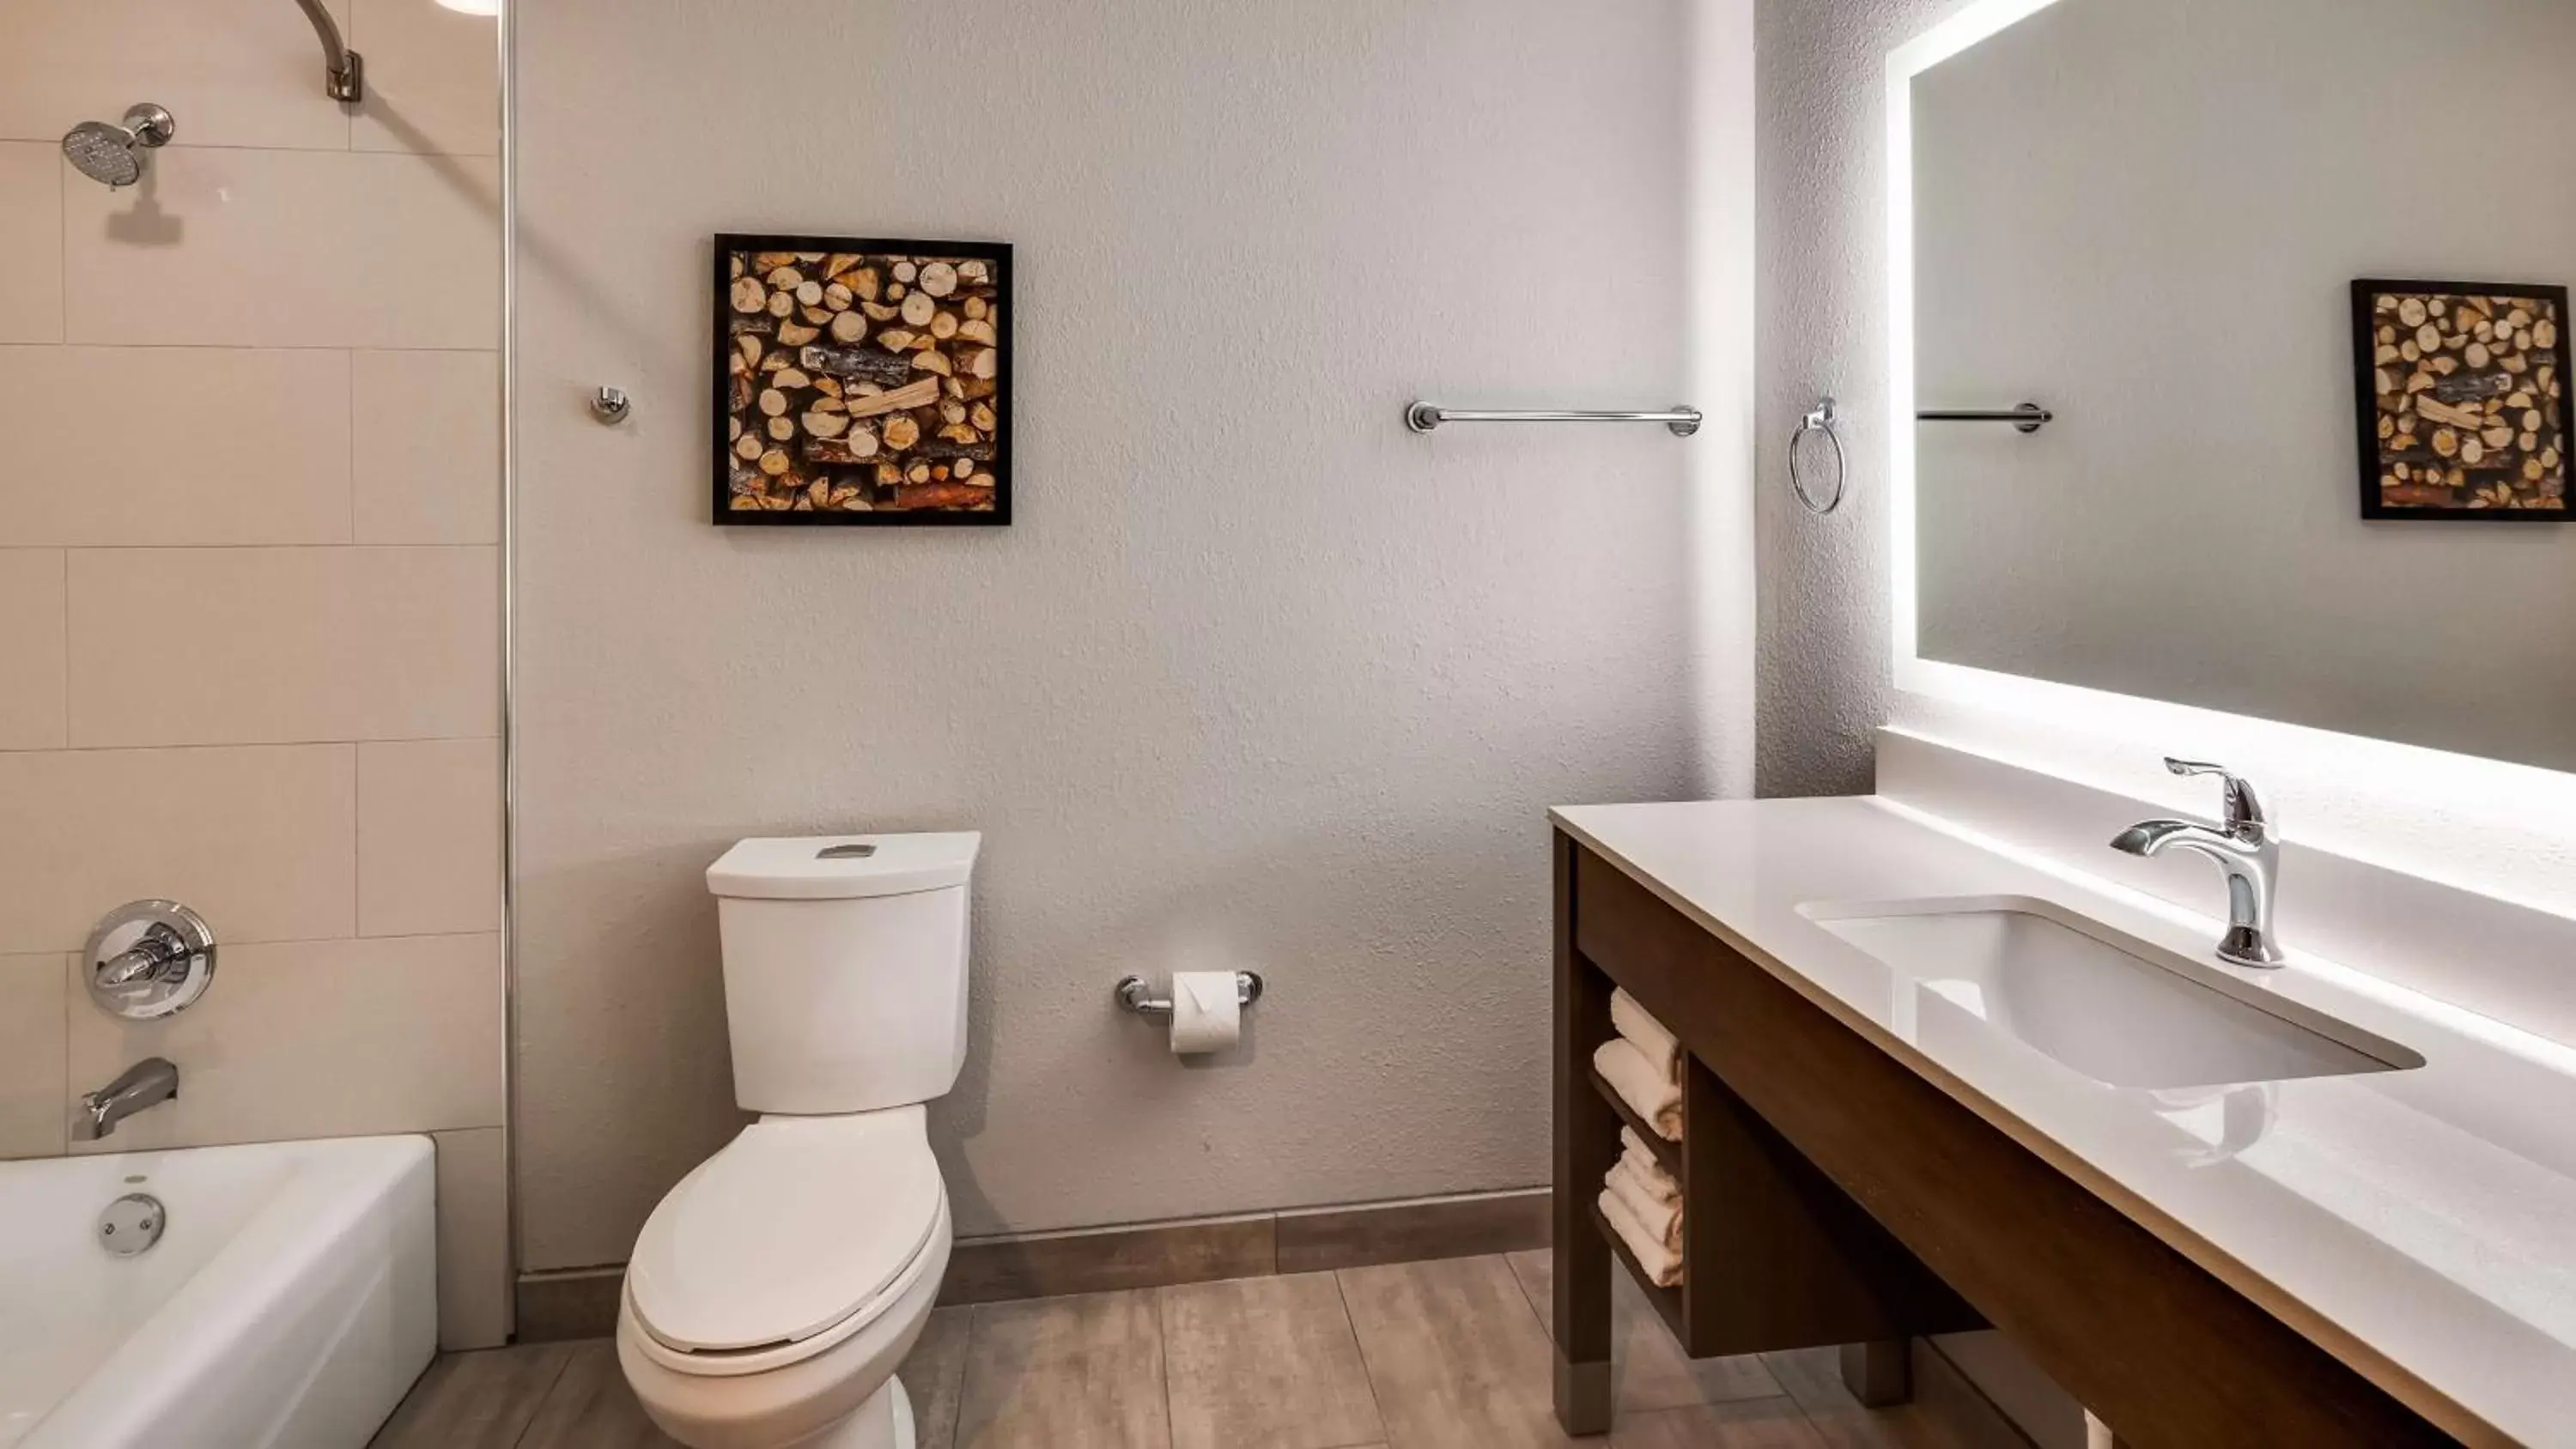 Bathroom in Best Western Plus Bourbonnais Hotel & Suites